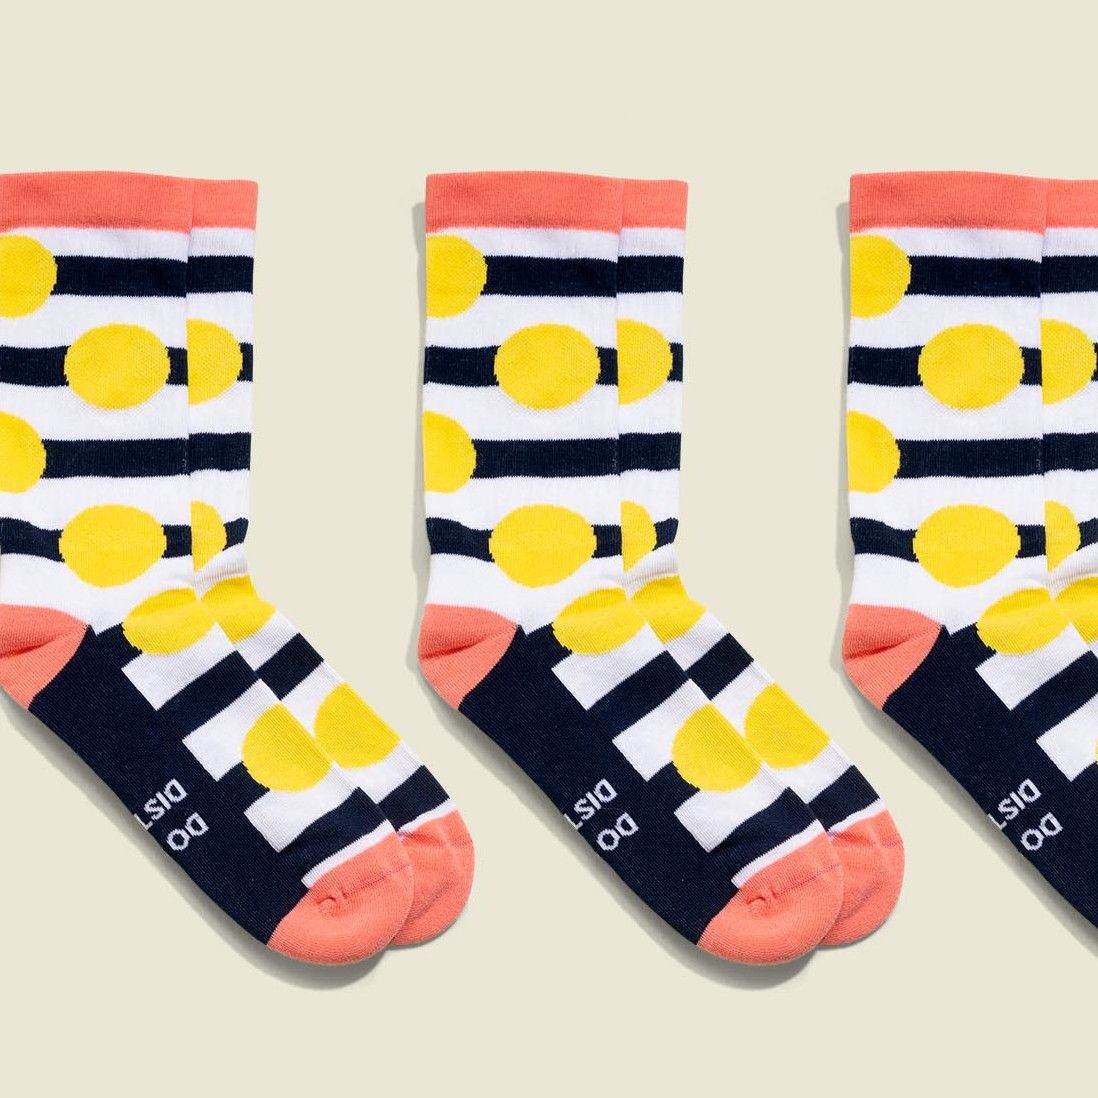 Three socks 